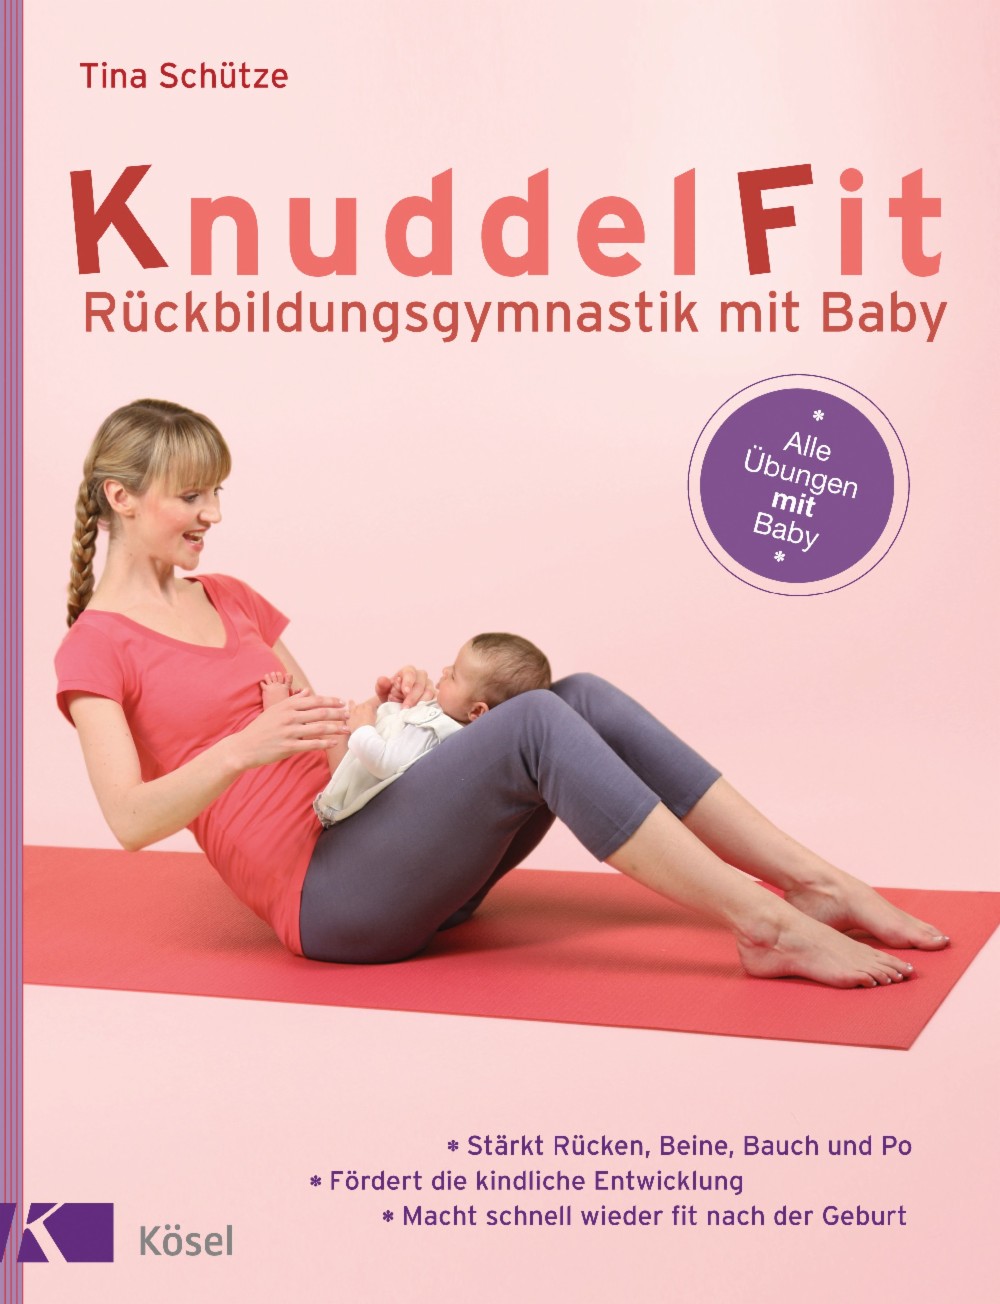 Buch "KnuddelFit - Rückbildungsgymnastik mit Baby"